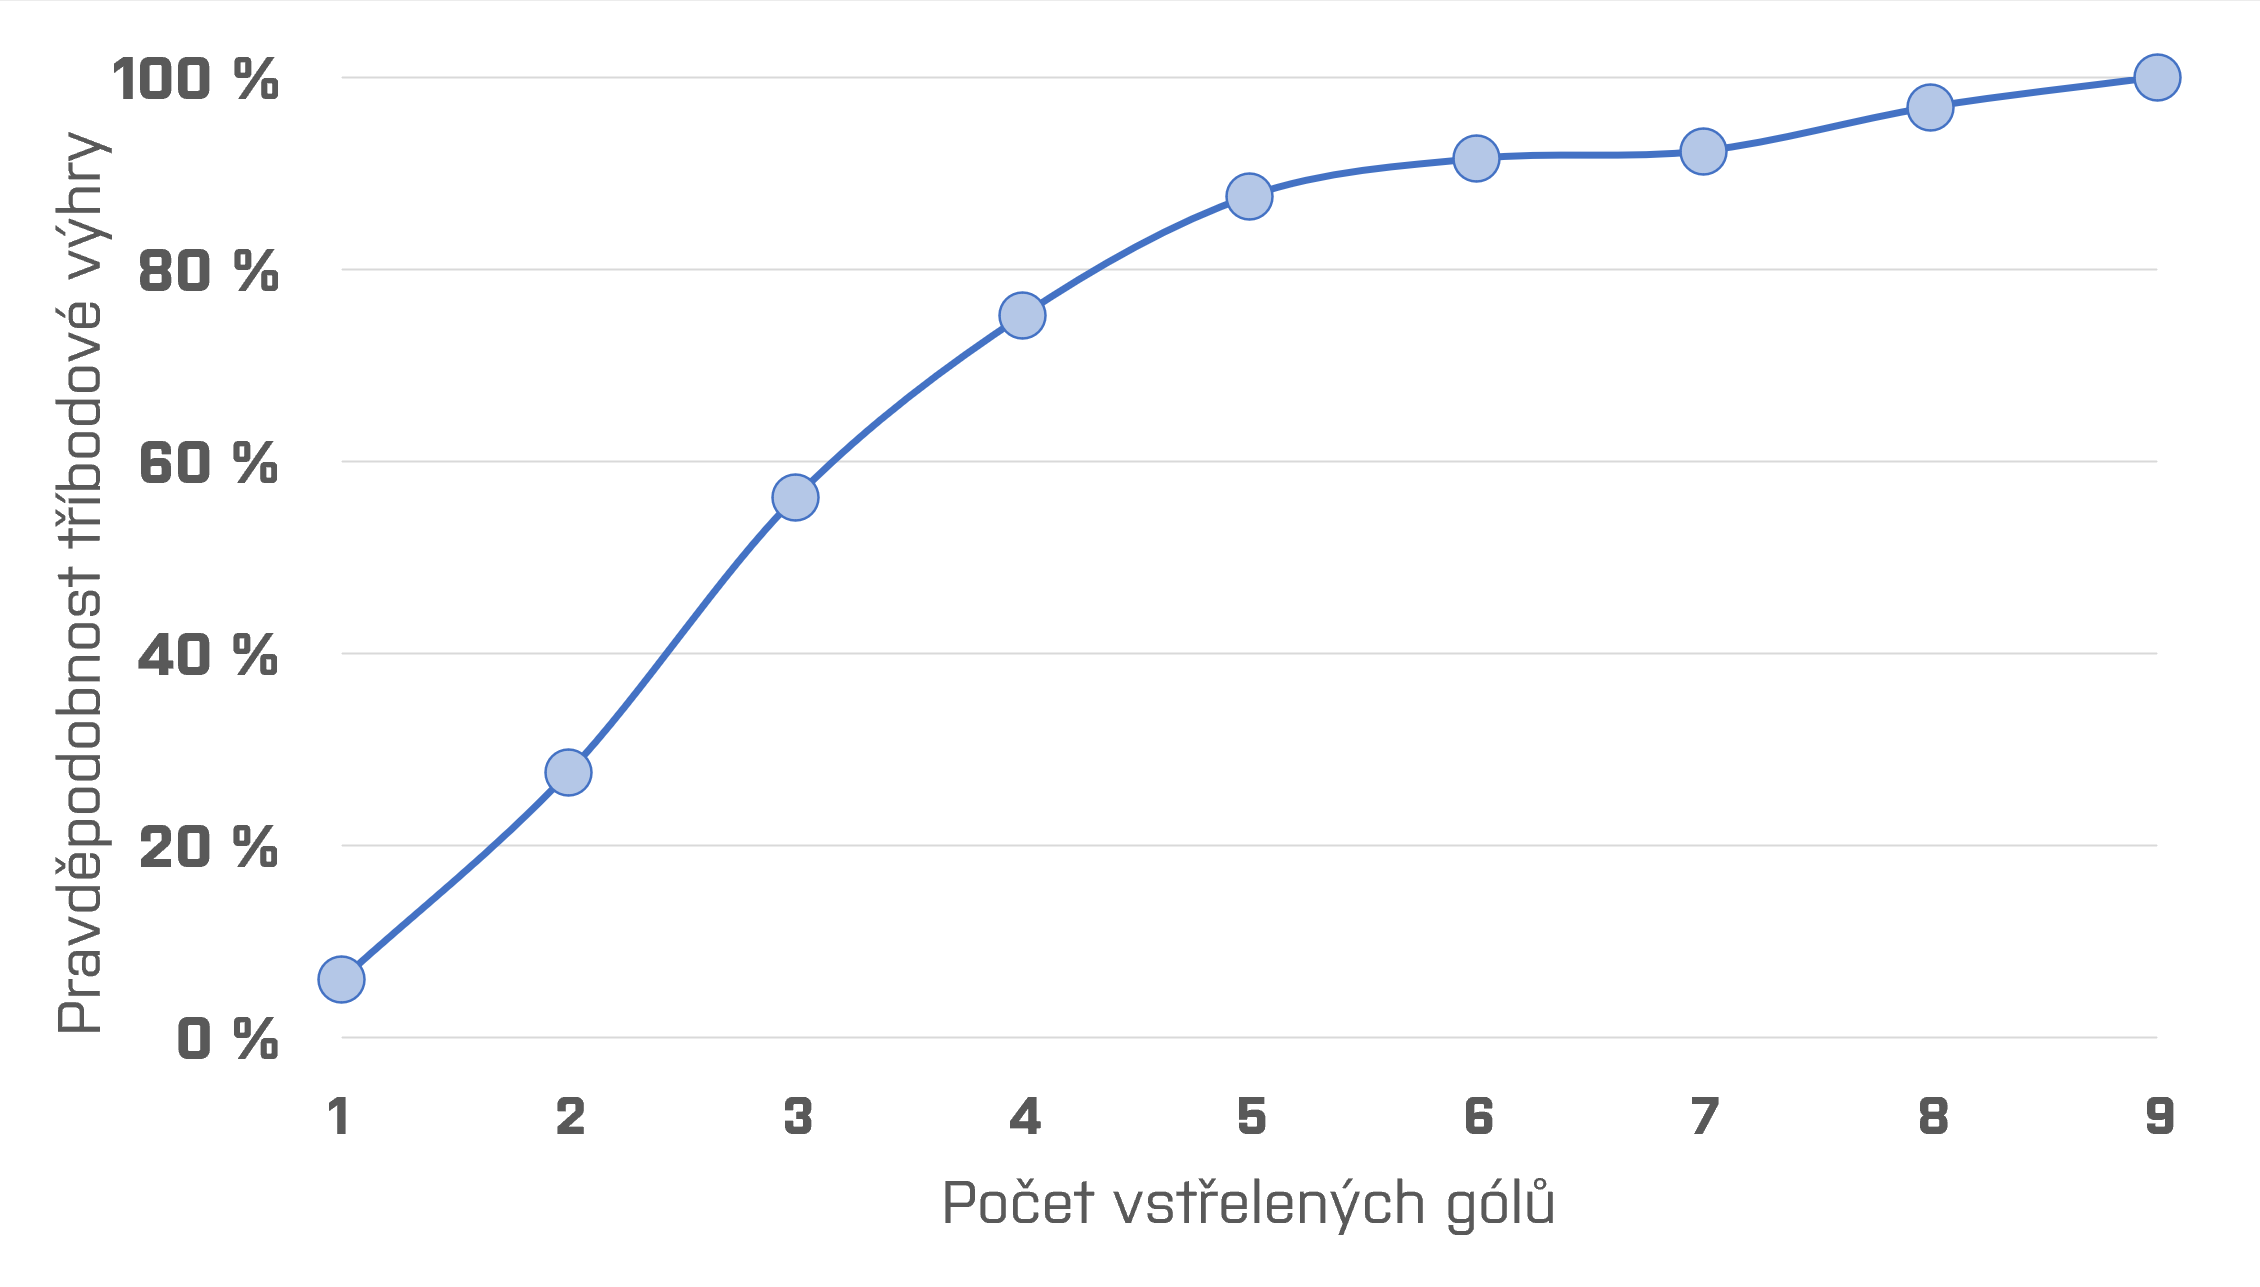 Graf znázorňující pravděpodobnost, že tým vyhraje za tři body, pokud vstřelí určitý počet gólů.